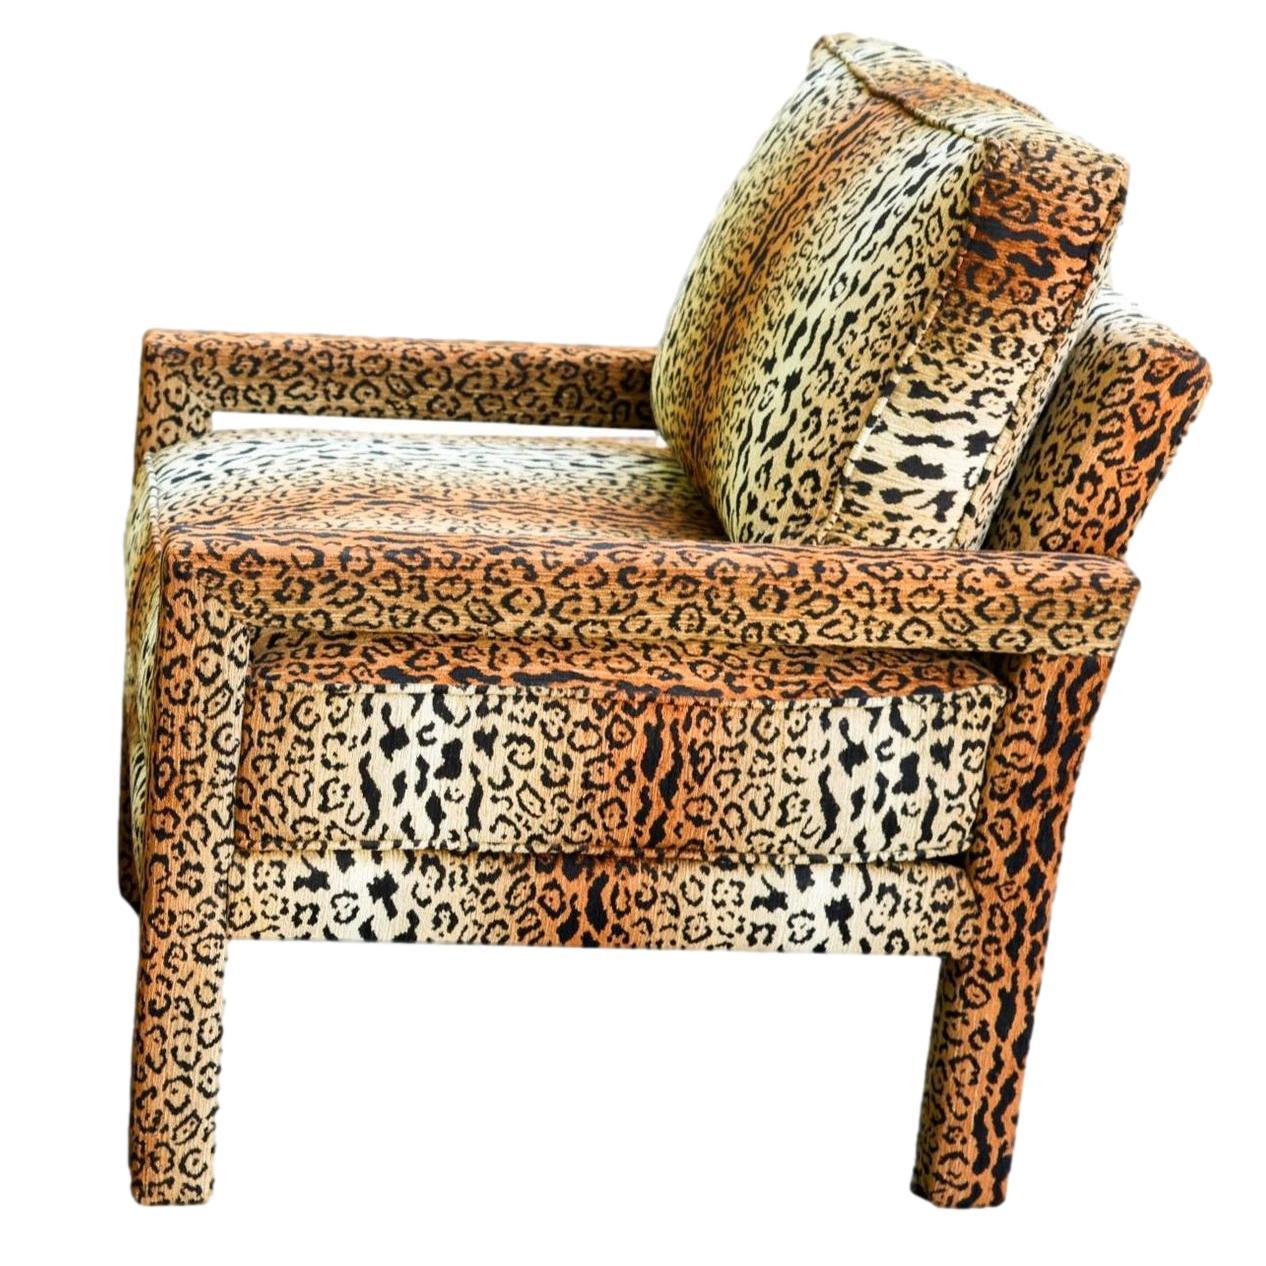 Une nouvelle chaise Parsons de style Milo Baughman recouverte de velours Cheetah de haute qualité. Nos chaises sont fabriquées et rembourrées à la main à partir de nouveaux matériaux et de nouveaux tissus par les meilleurs artisans de Morganton, en